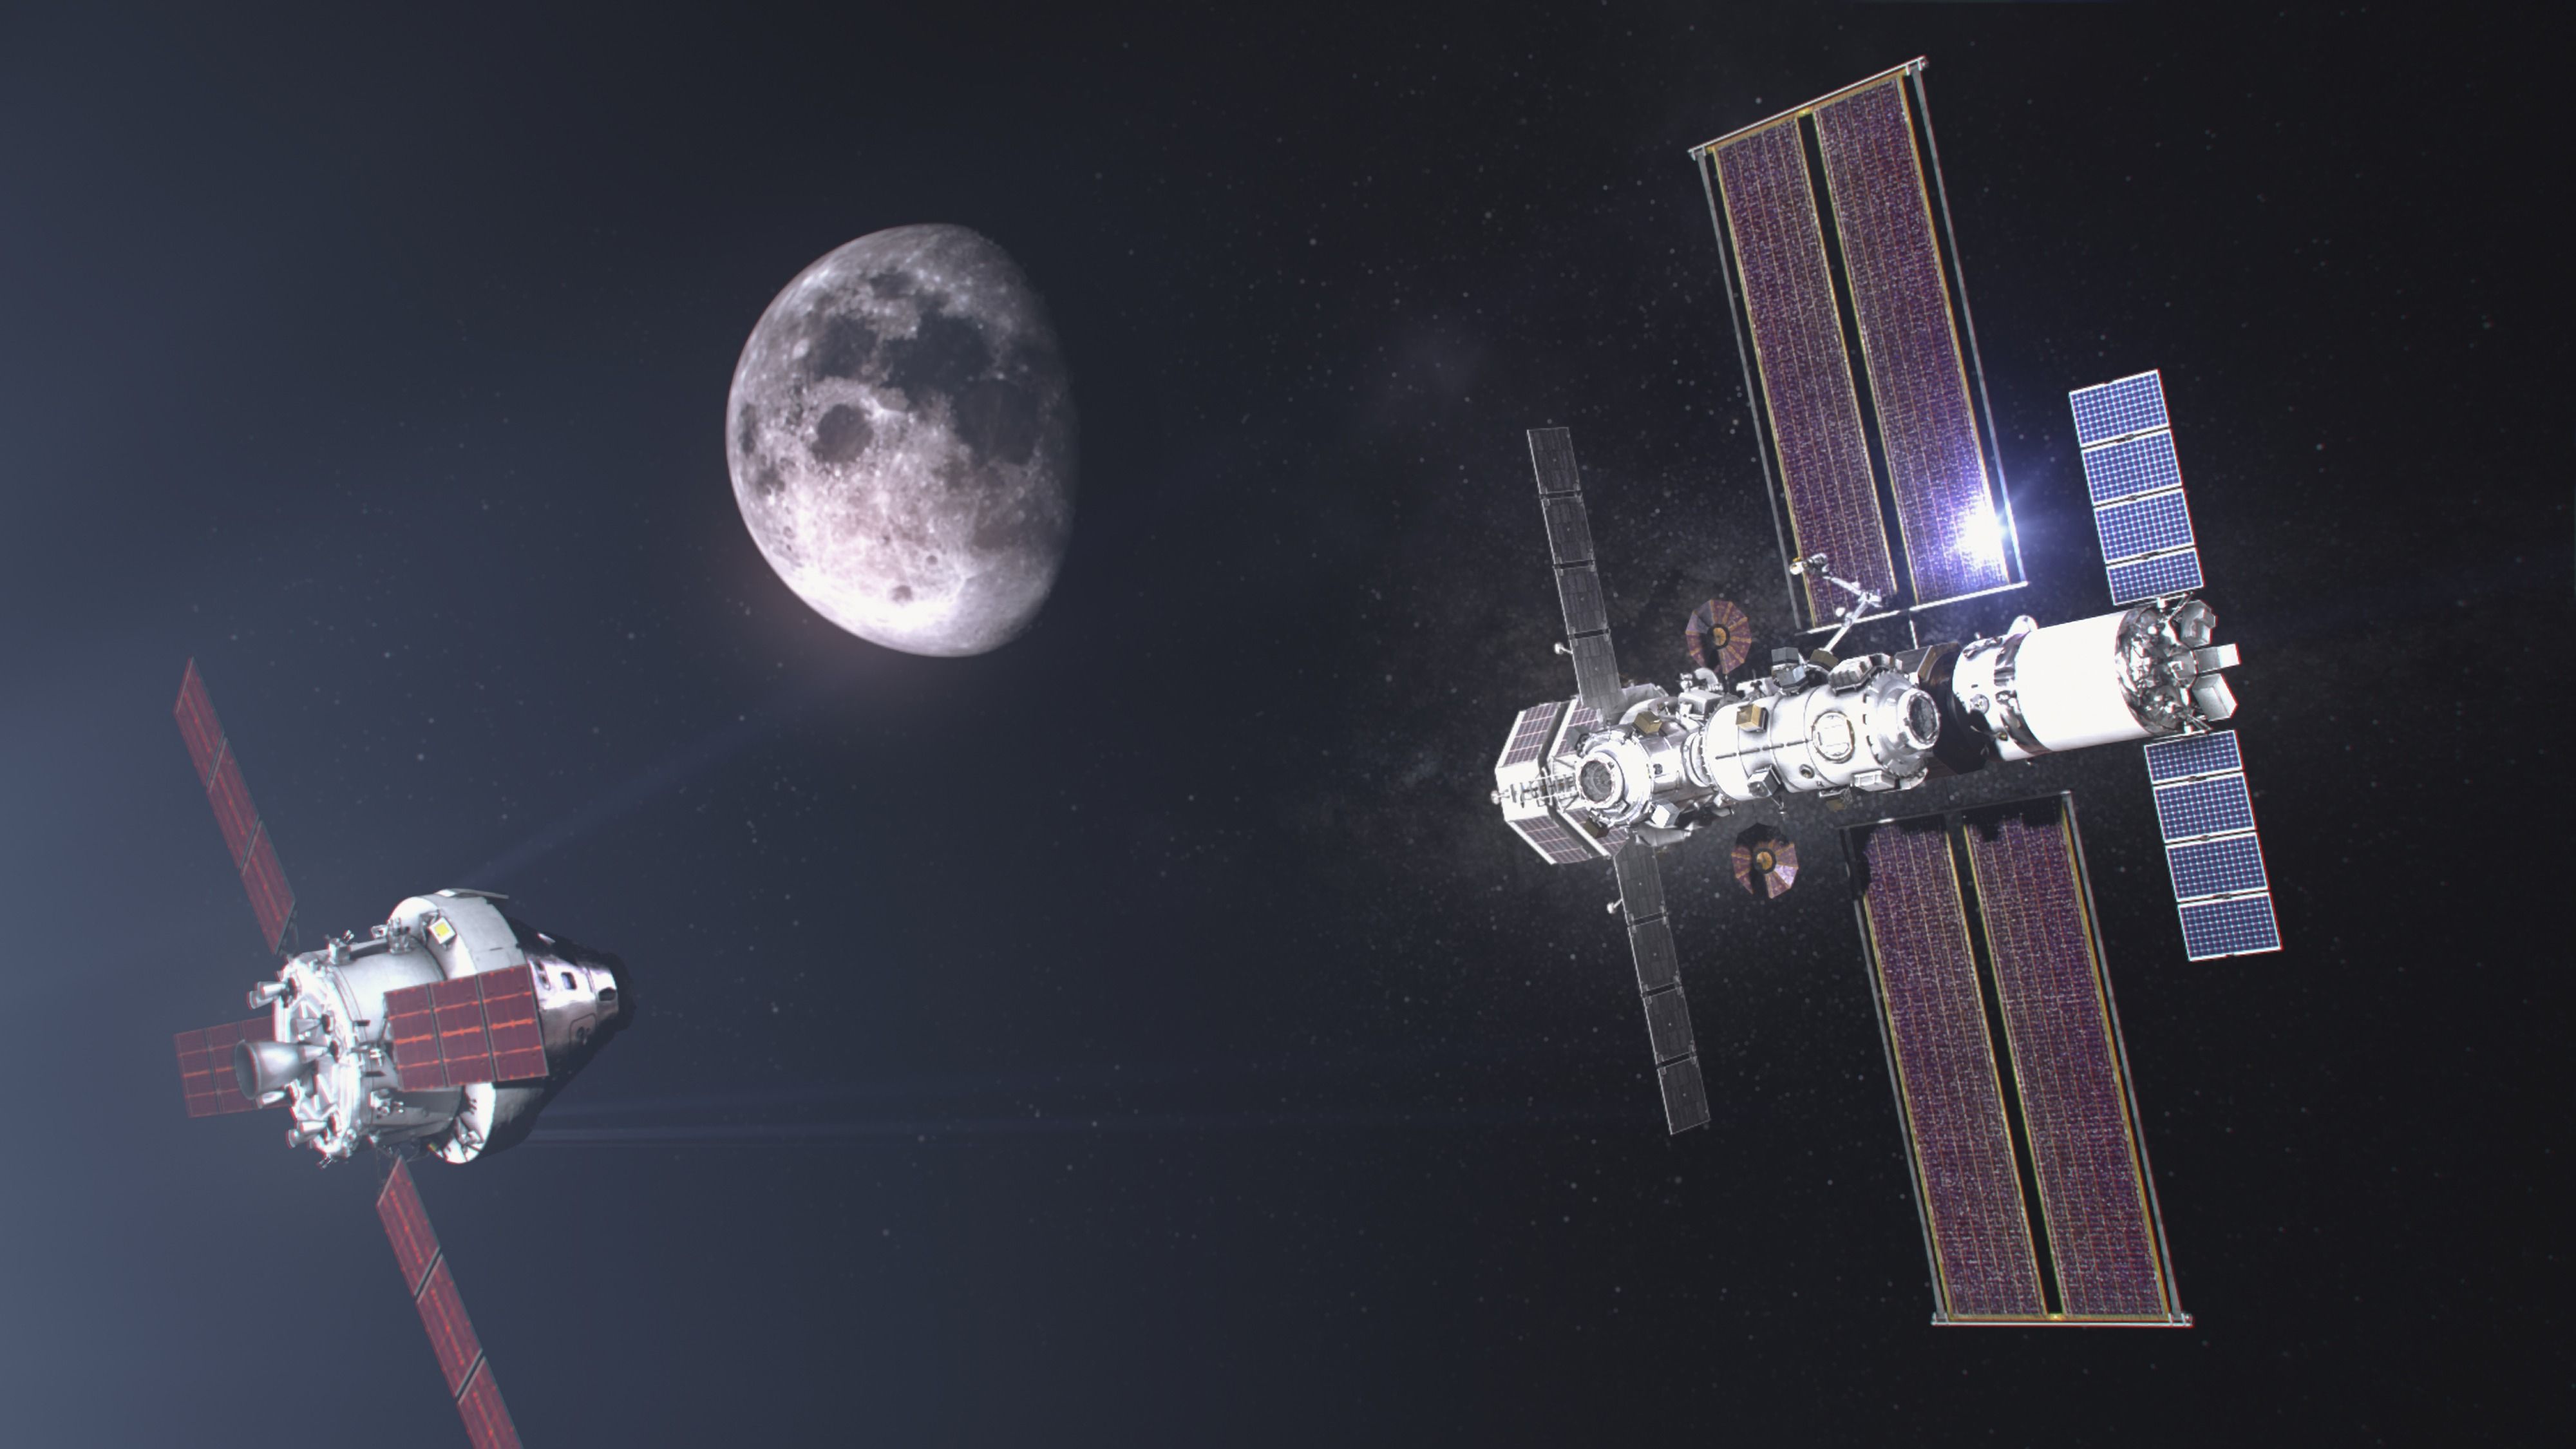 Capstone-Satellit im Weltall - NASA testet die Umlaufbahn ihrer neuen Mondstation